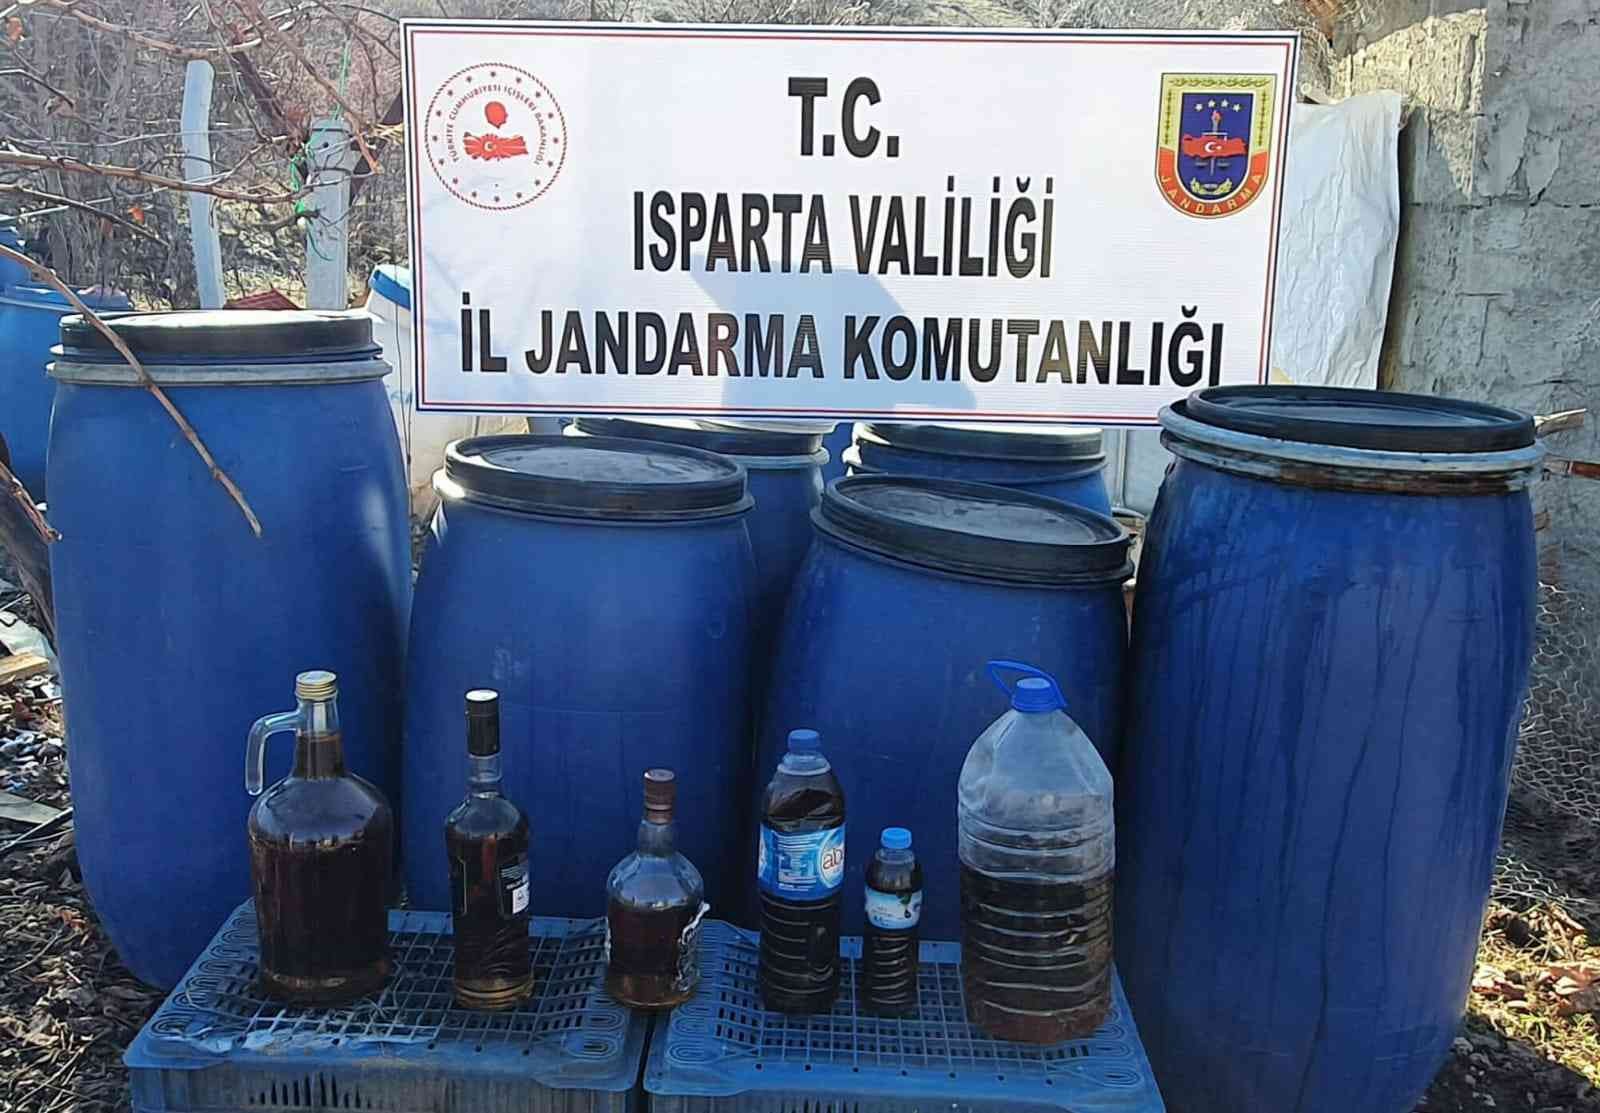 Isparta’da kaçak alkol operasyonu: 1 gözaltı #isparta